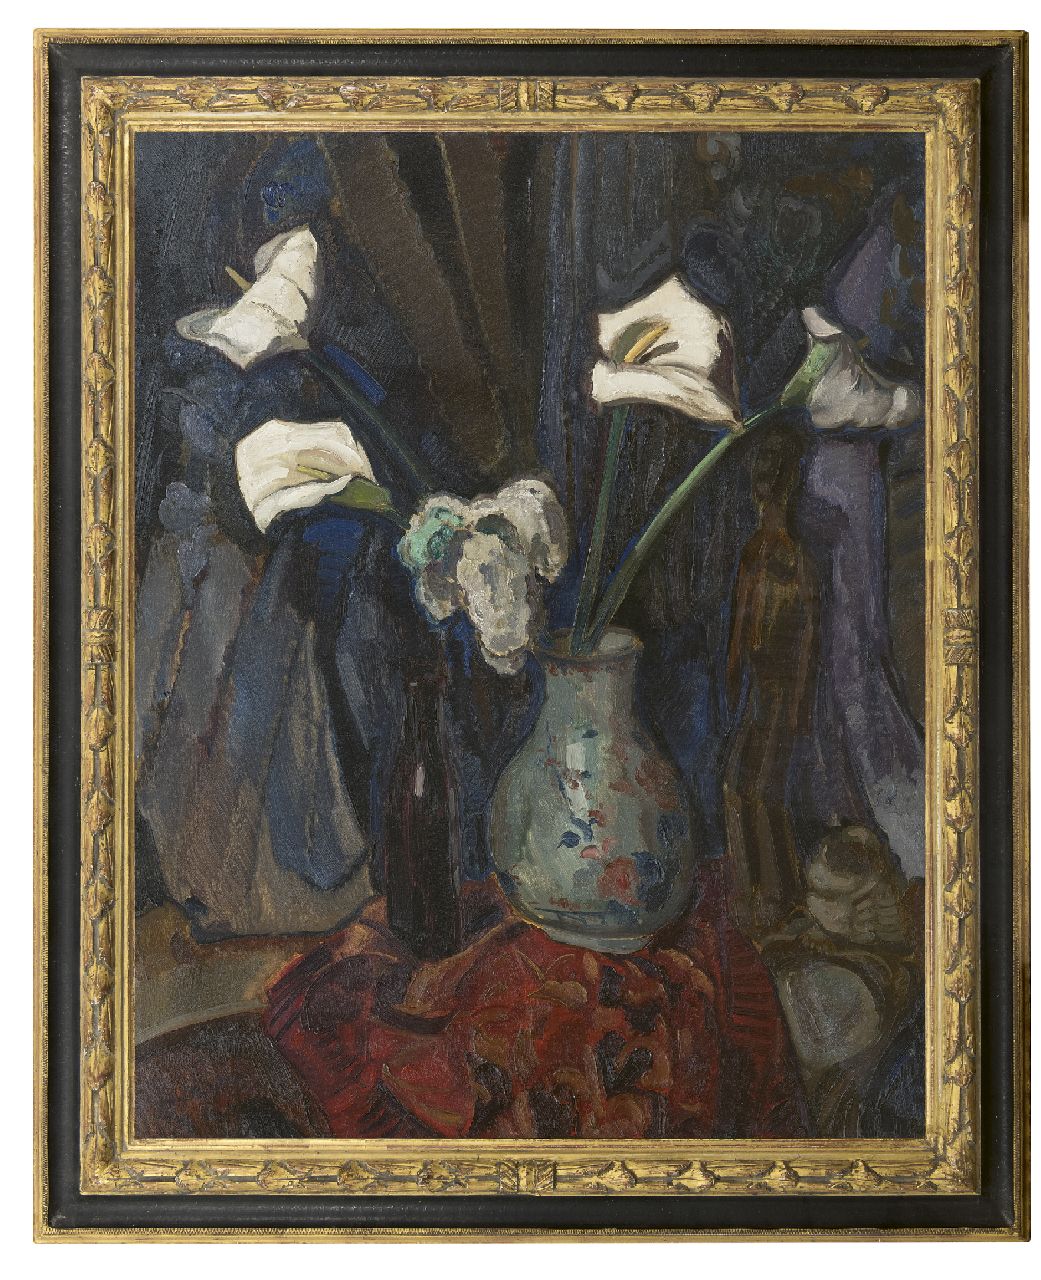 Filarski D.H.W.  | 'Dirk' Herman Willem Filarski | Gemälde zum Verkauf angeboten | Arum in einer Vase, Öl auf Leinwand 100,5 x 80,2 cm, Unterzeichnet u.l. und zu datieren ca. 1918-1922